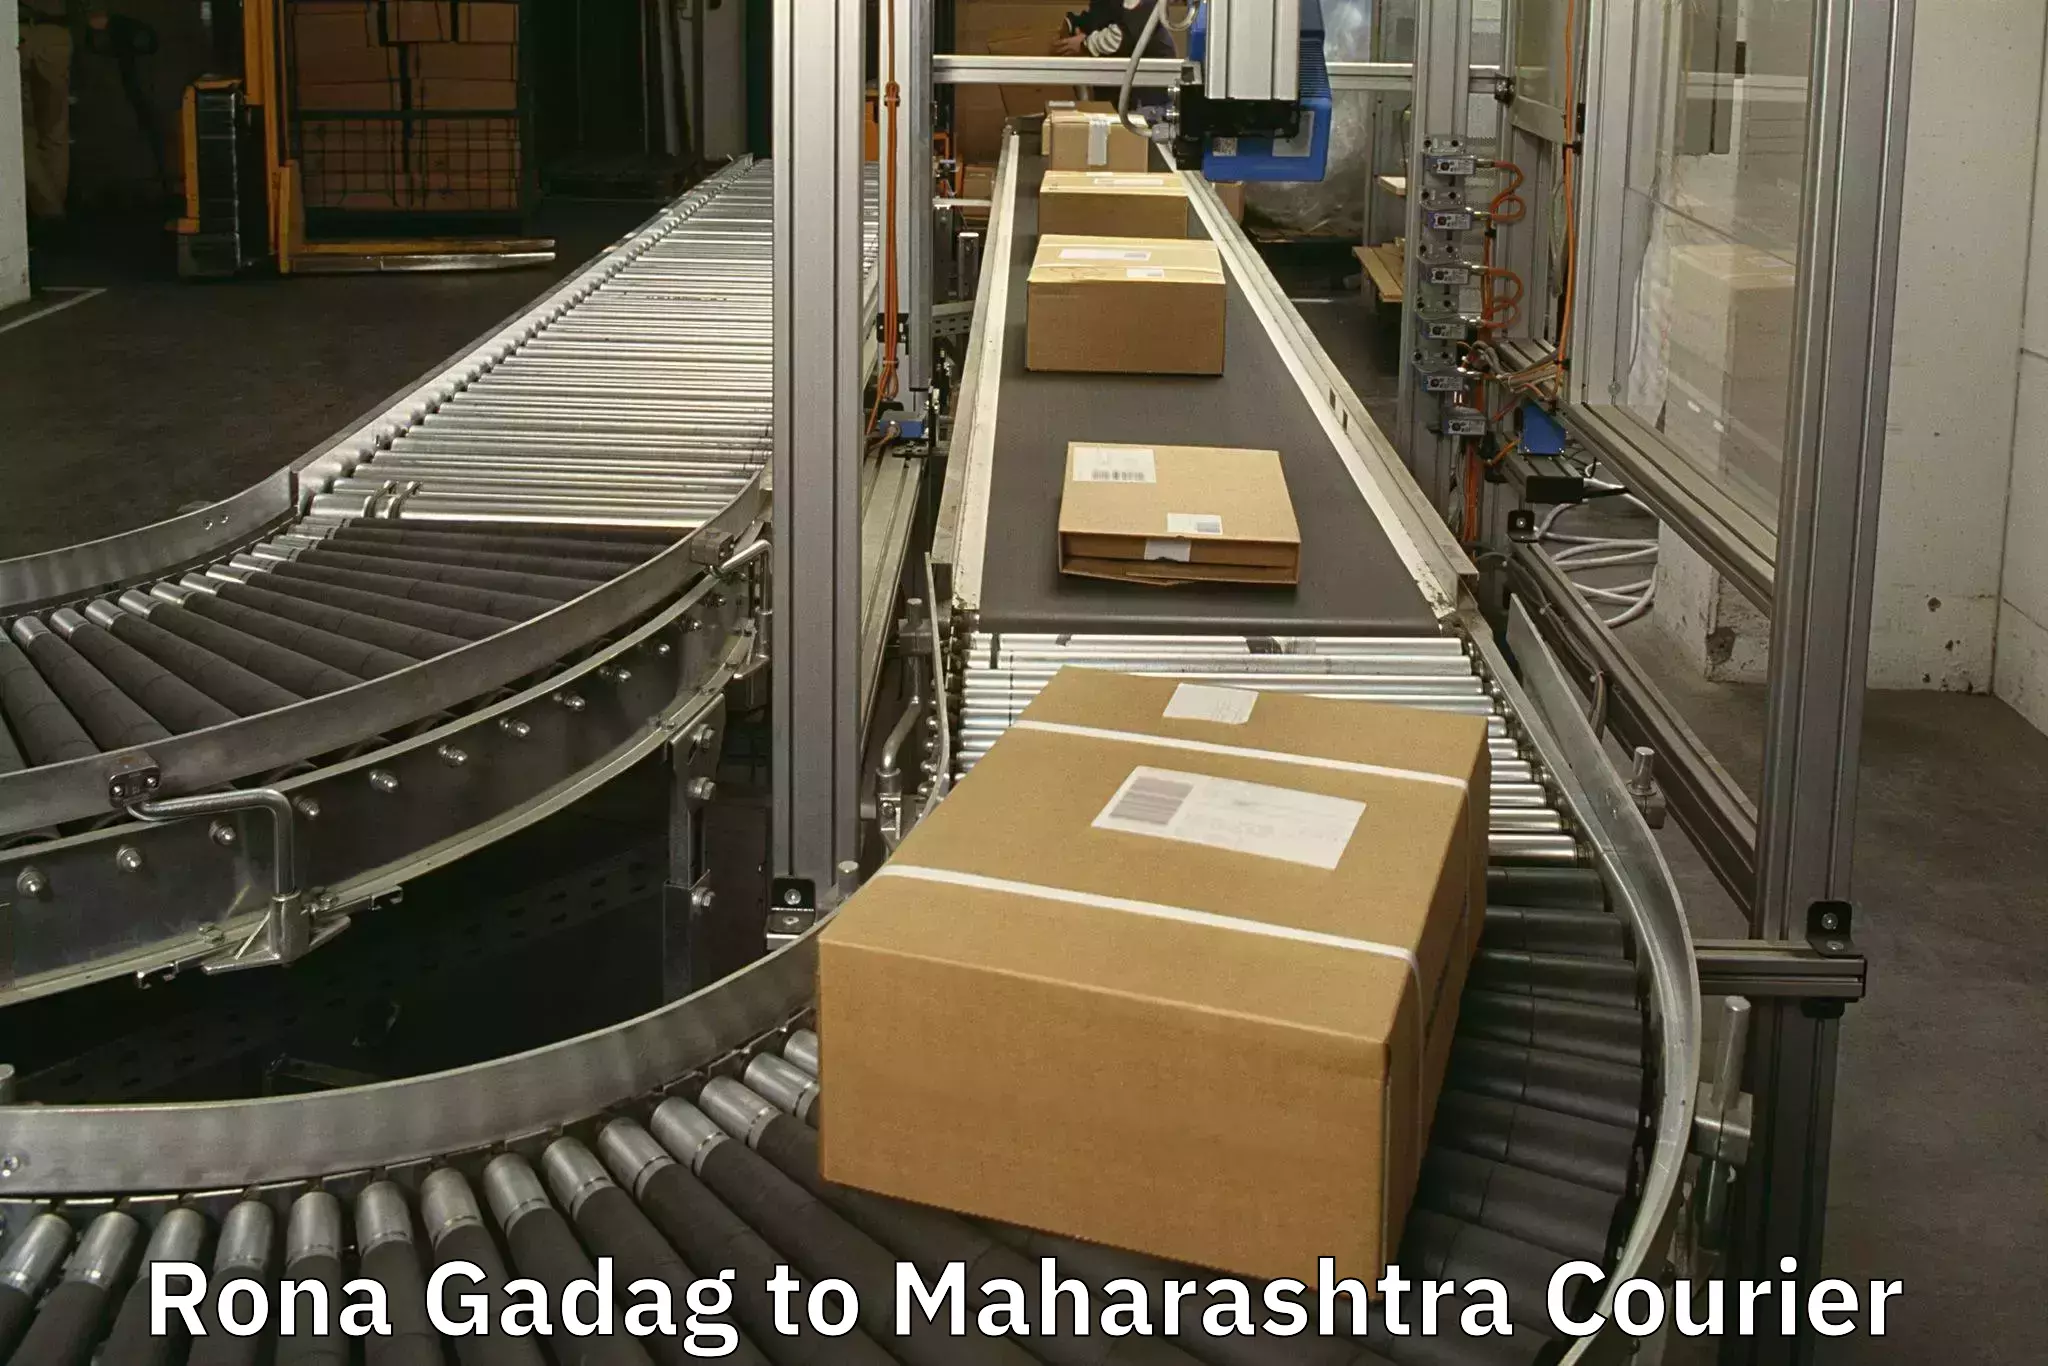 Luggage transport service Rona Gadag to Maharashtra